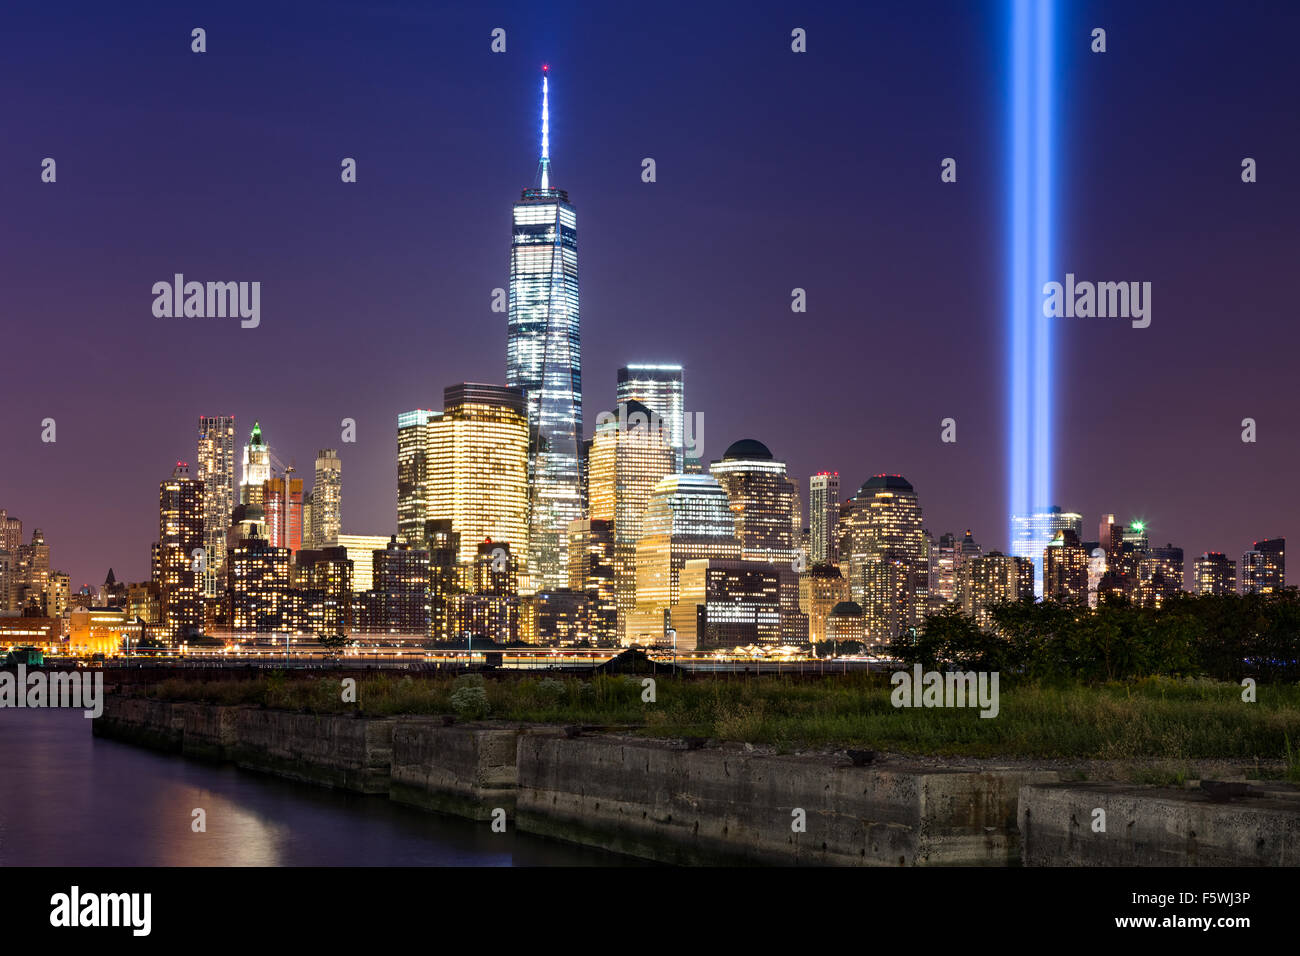 Rendre hommage à la lumière, deux colonnes verticales de lumière s'élever au-dessus de la partie basse de Manhattan à côté du nouveau World Trade Center, New York City Banque D'Images